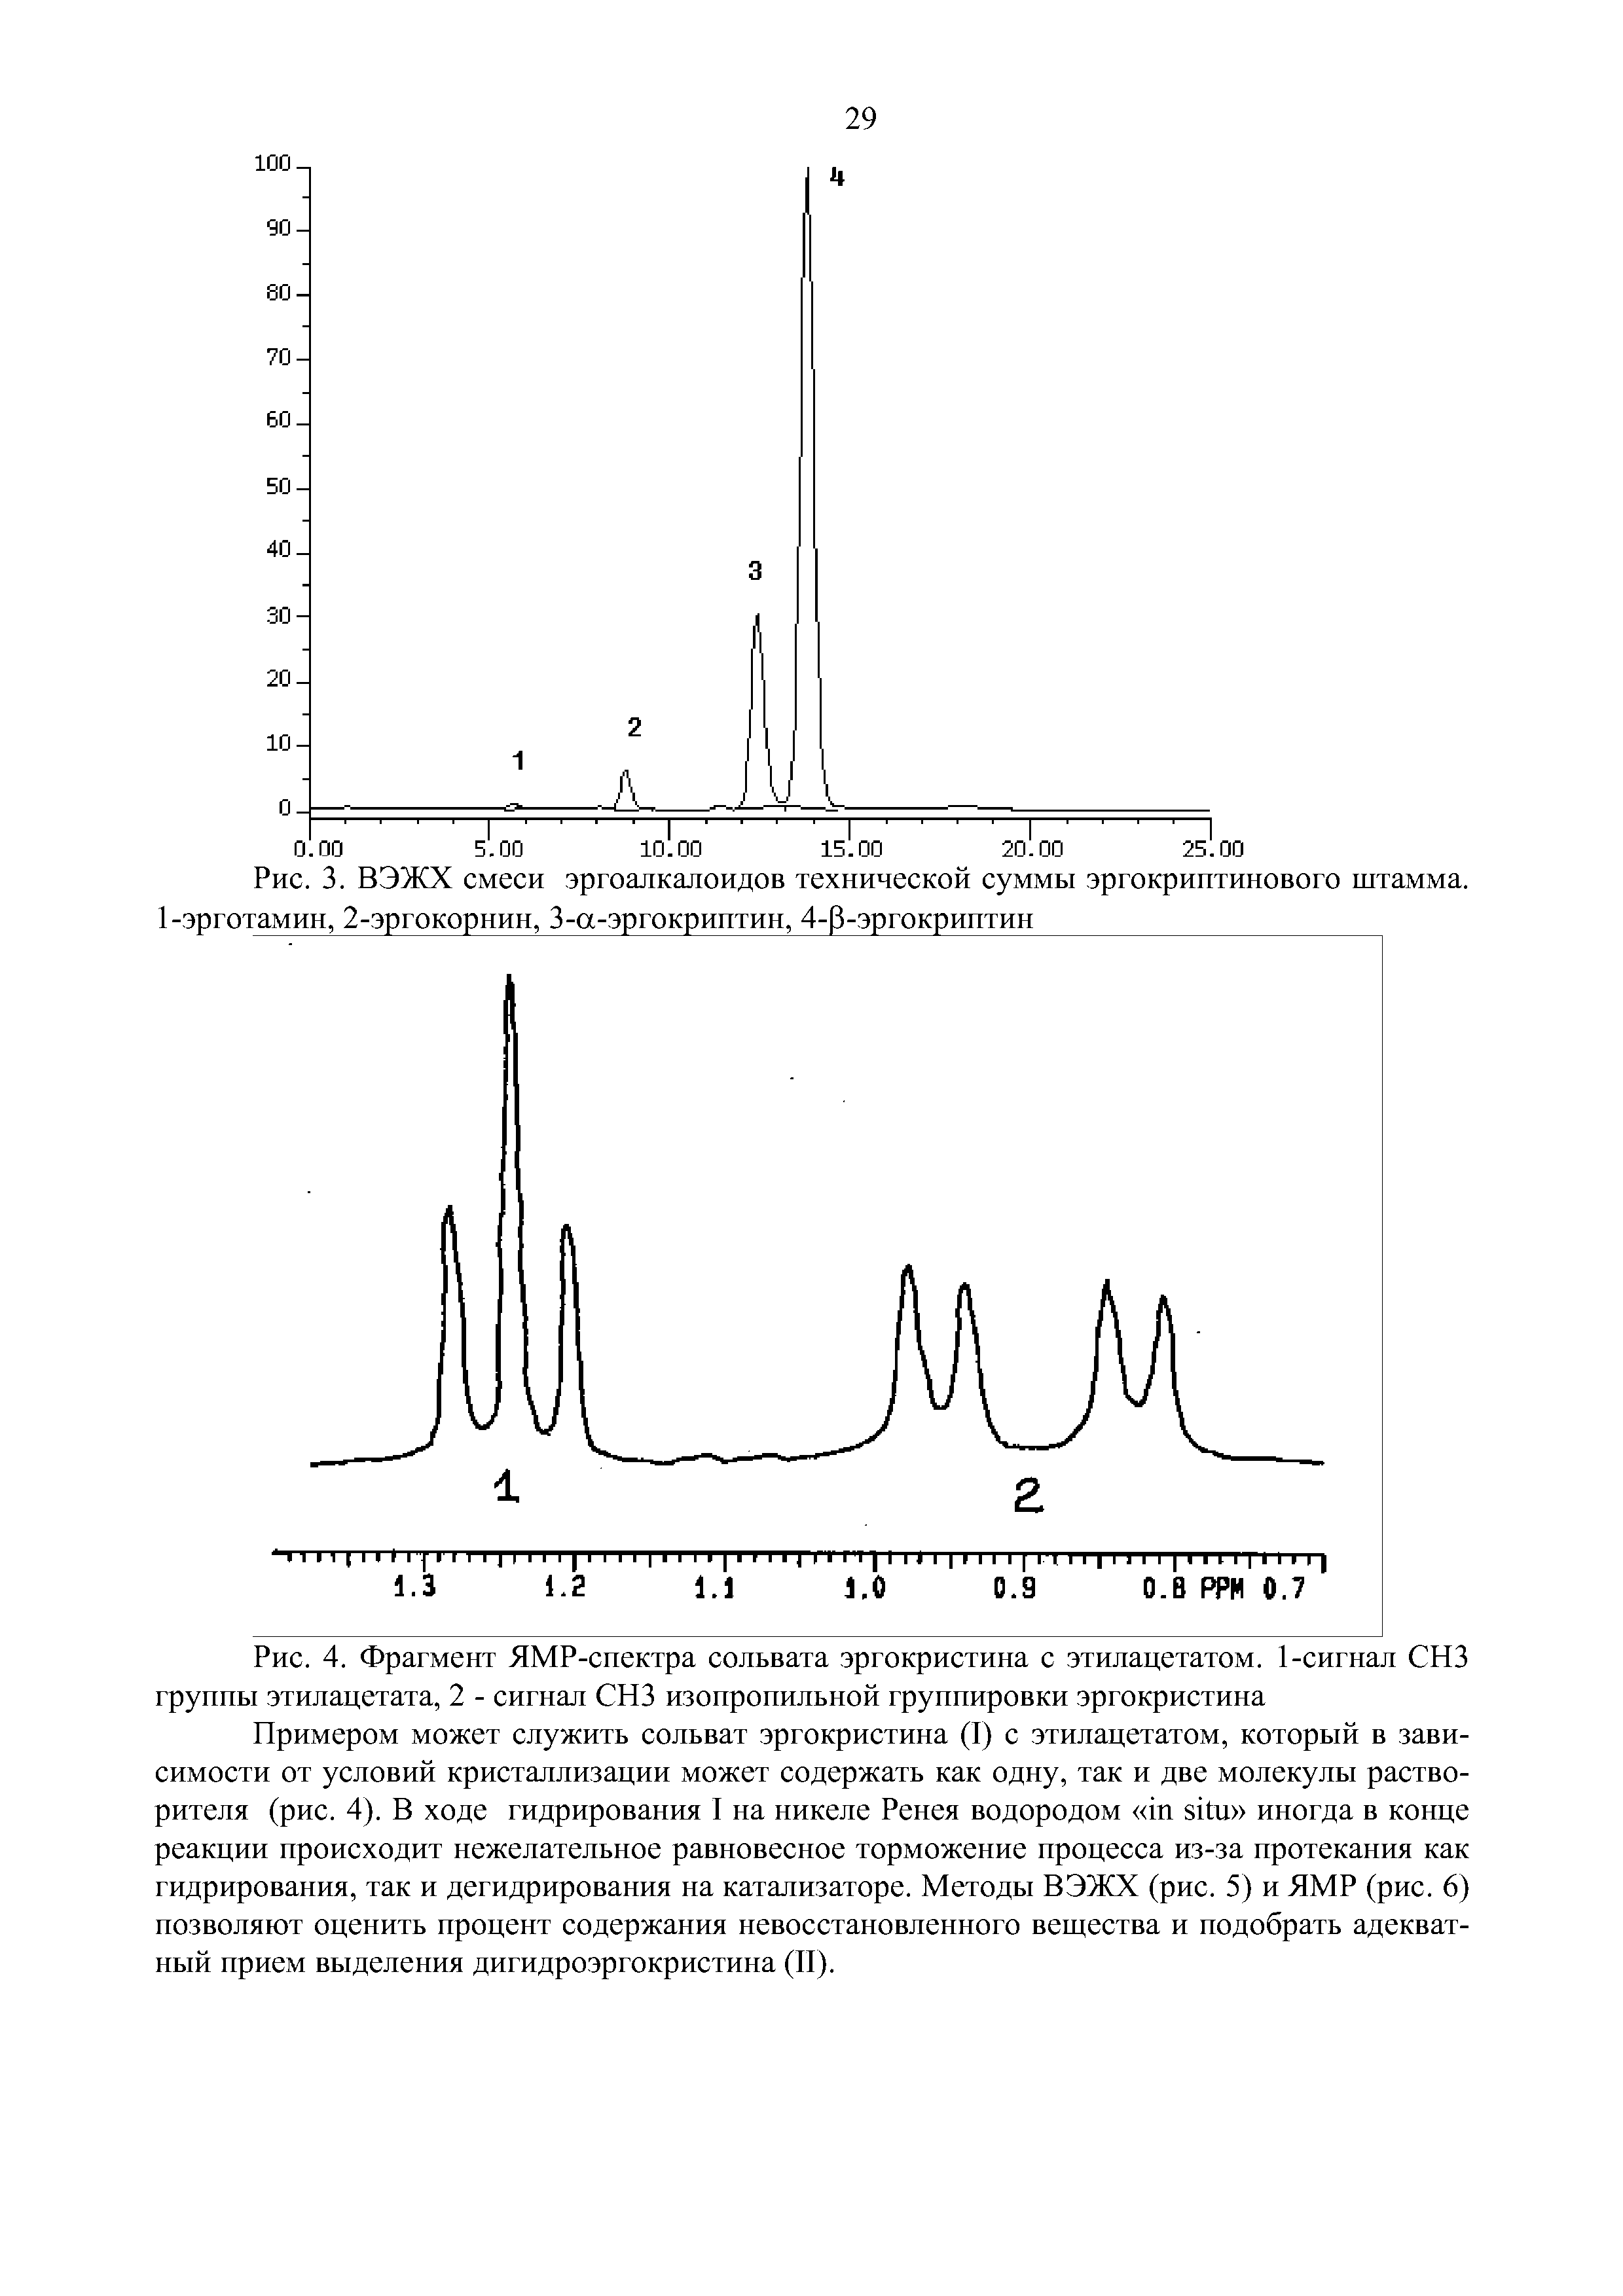 Рис. 4. Фрагмент ЯМР-спектра сольвата эргокристина с этилацетатом. 1-сигнал СНЗ группы этилацетата, 2 - сигнал СНЗ изопропильной группировки эргокристина...